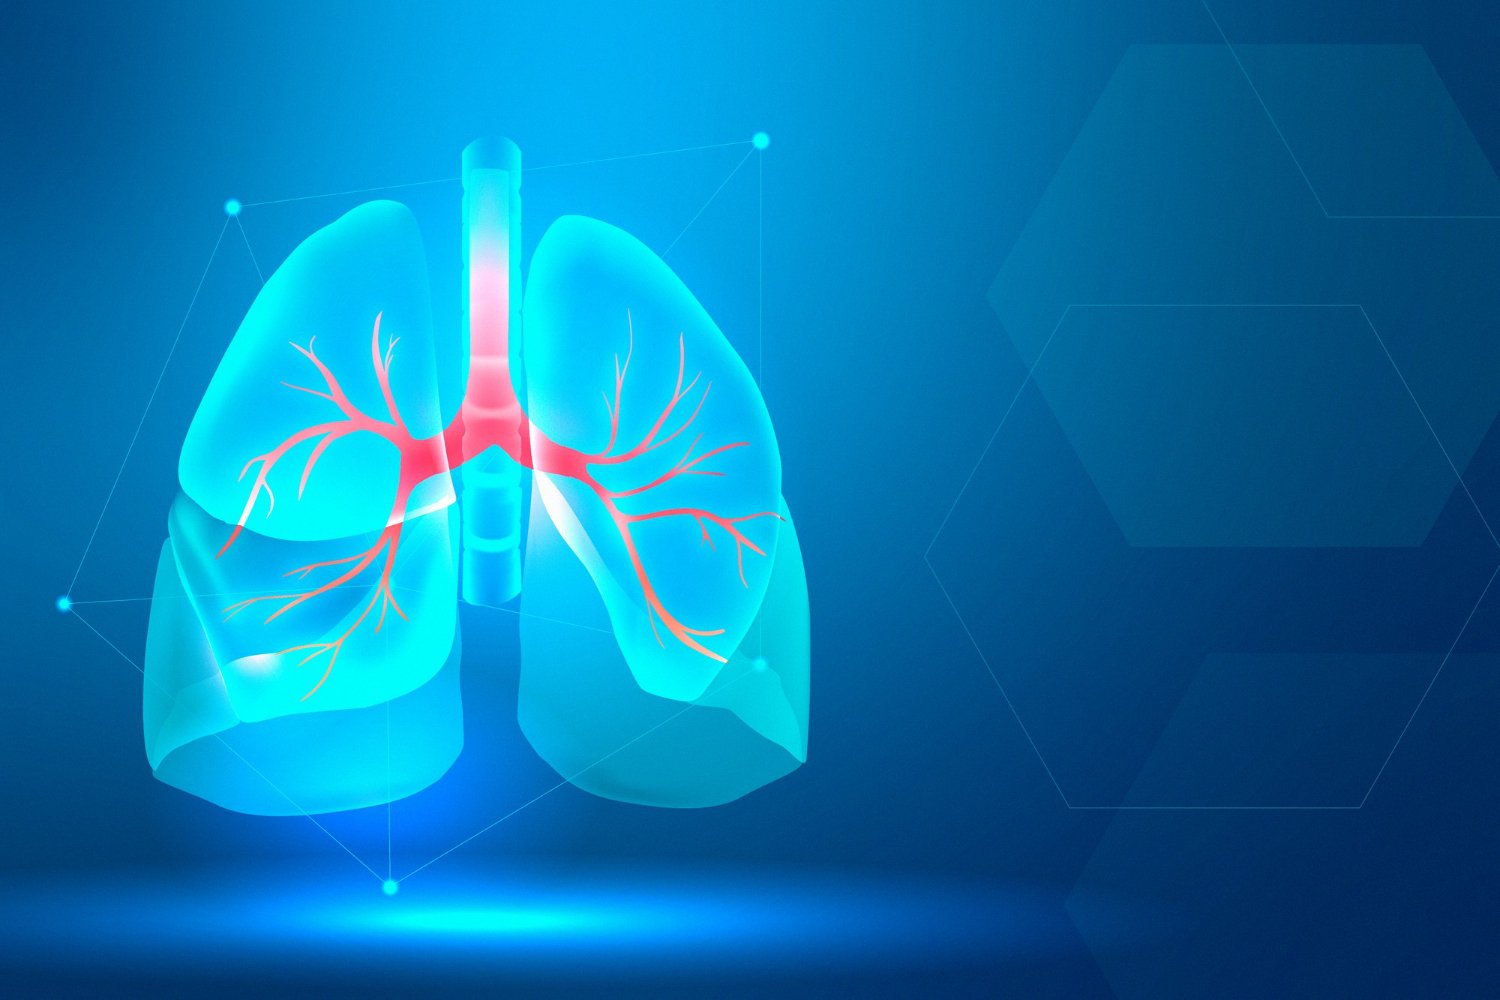 imagem ilustrativa de um poulmão demonstrando doenças do sistema respiratório